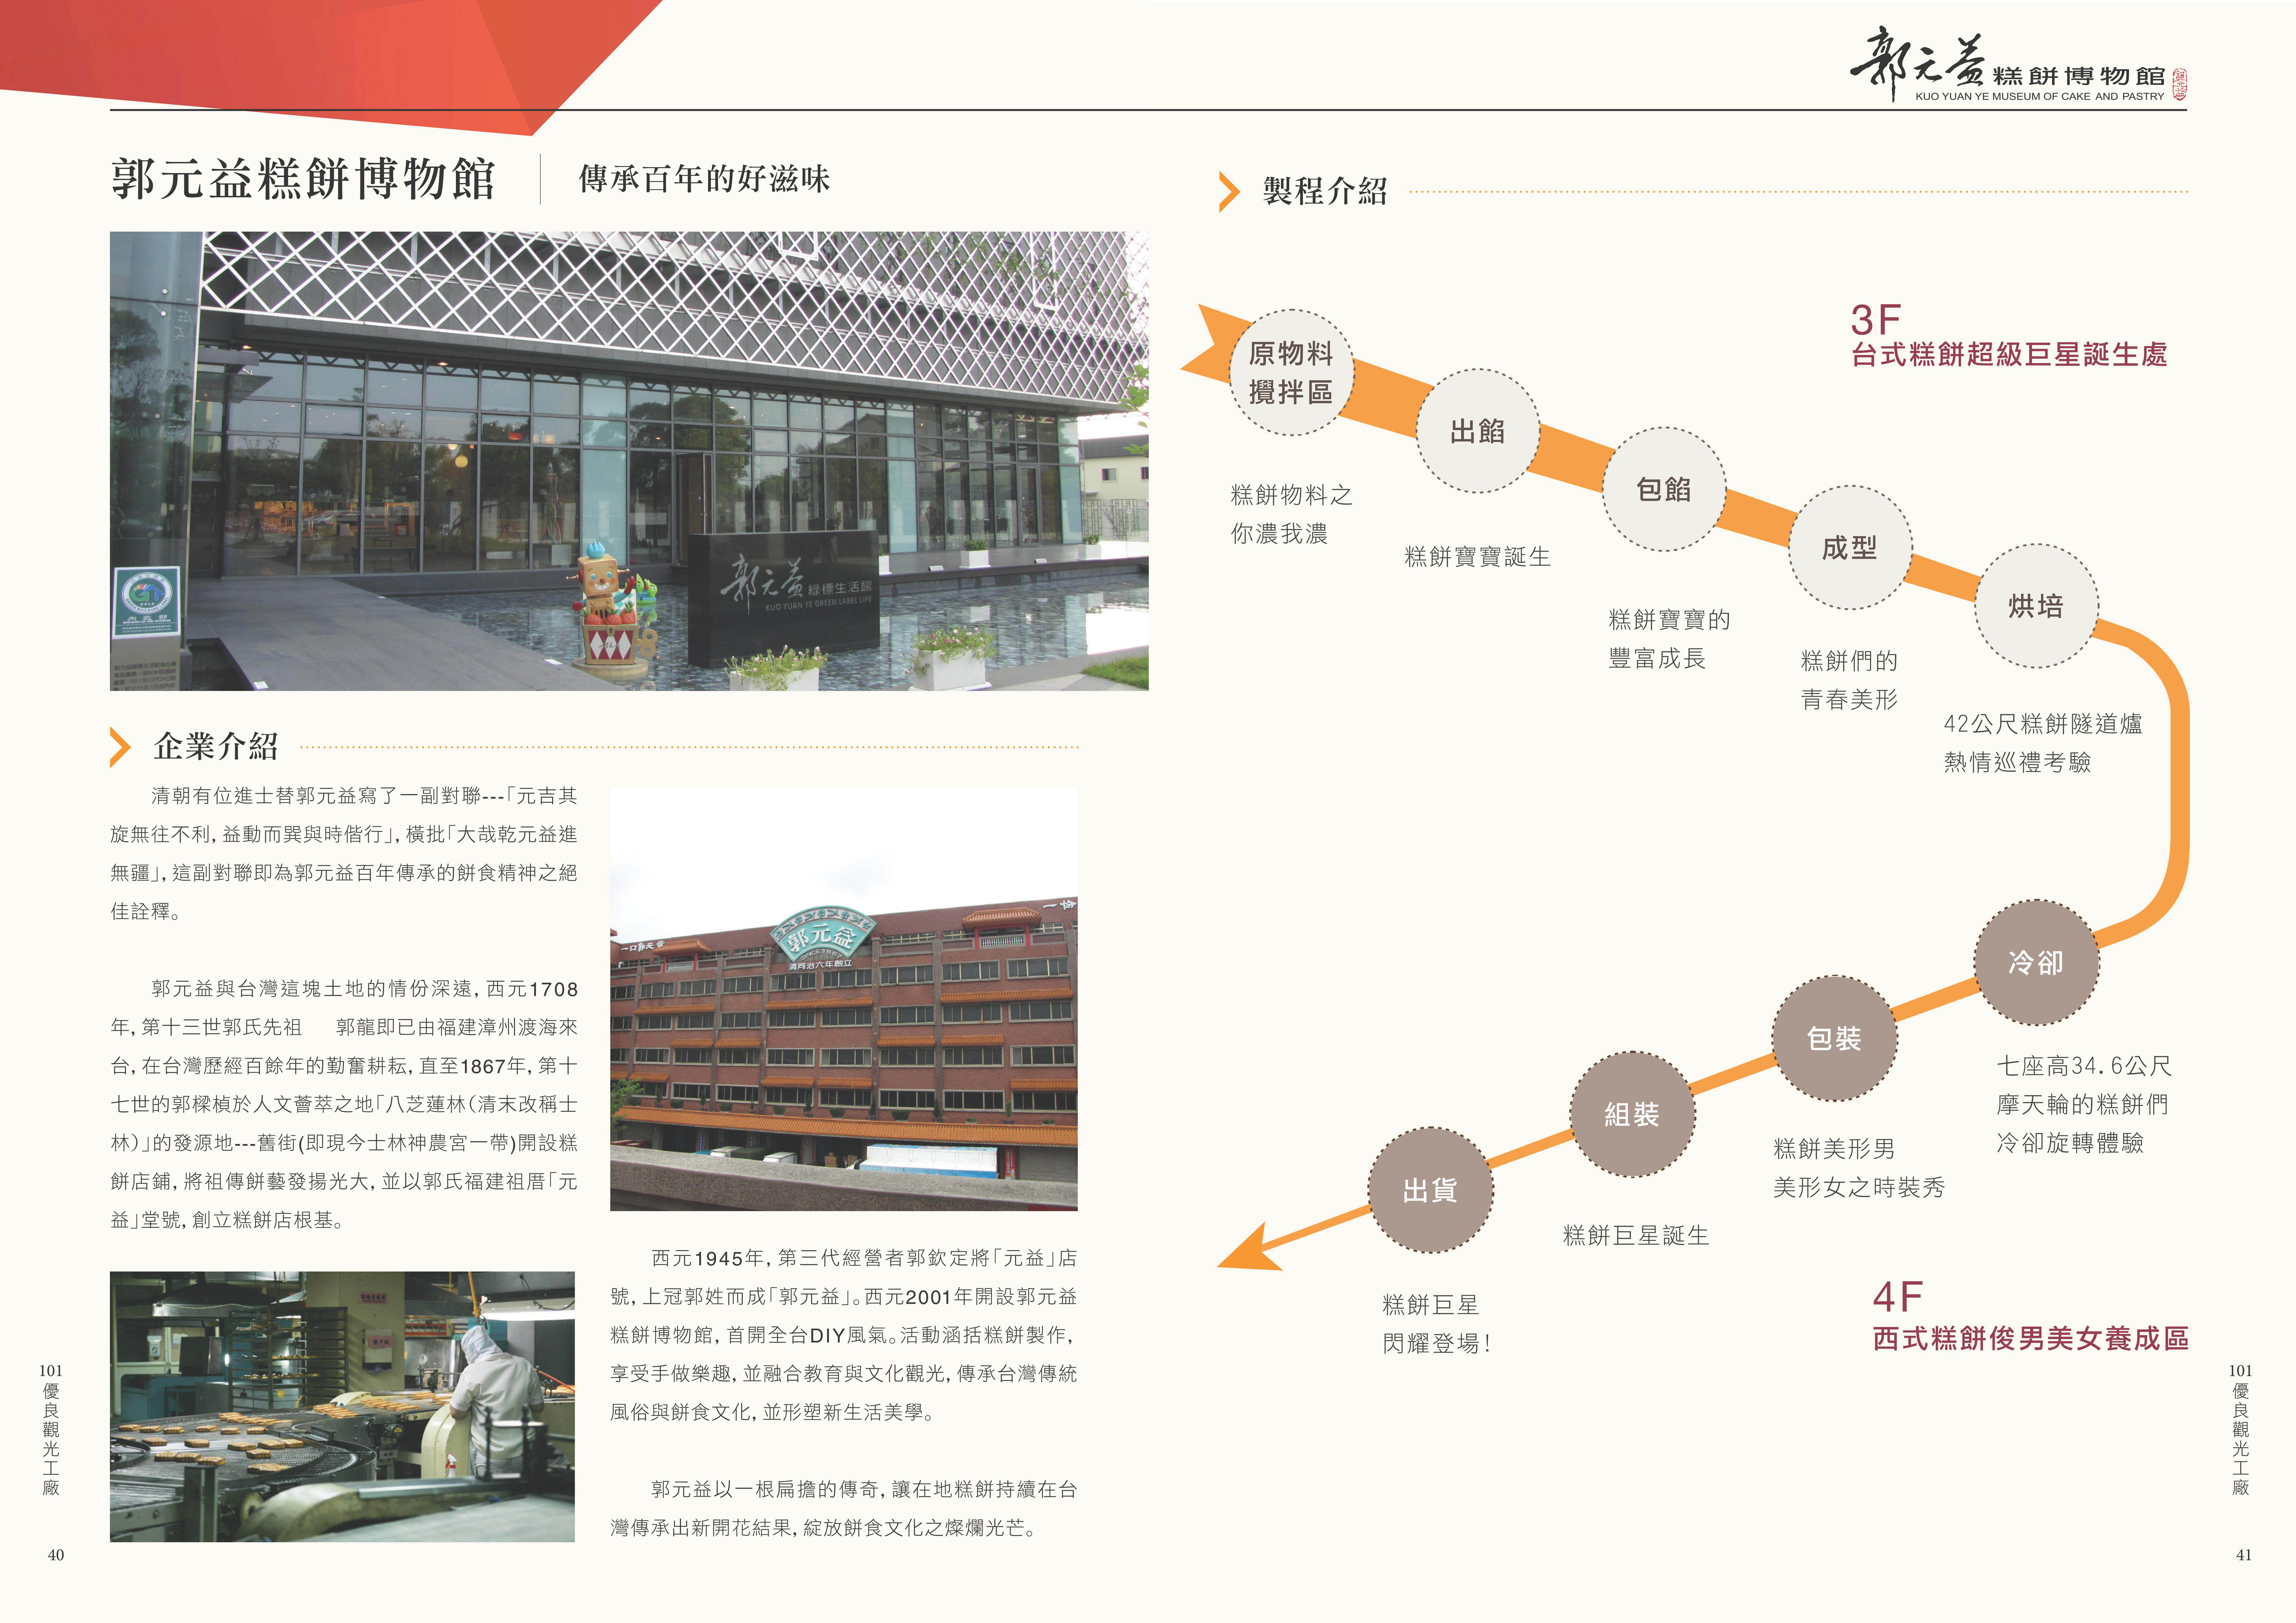 2012年度廠商專訪-郭元益糕餅博物館-企業介紹